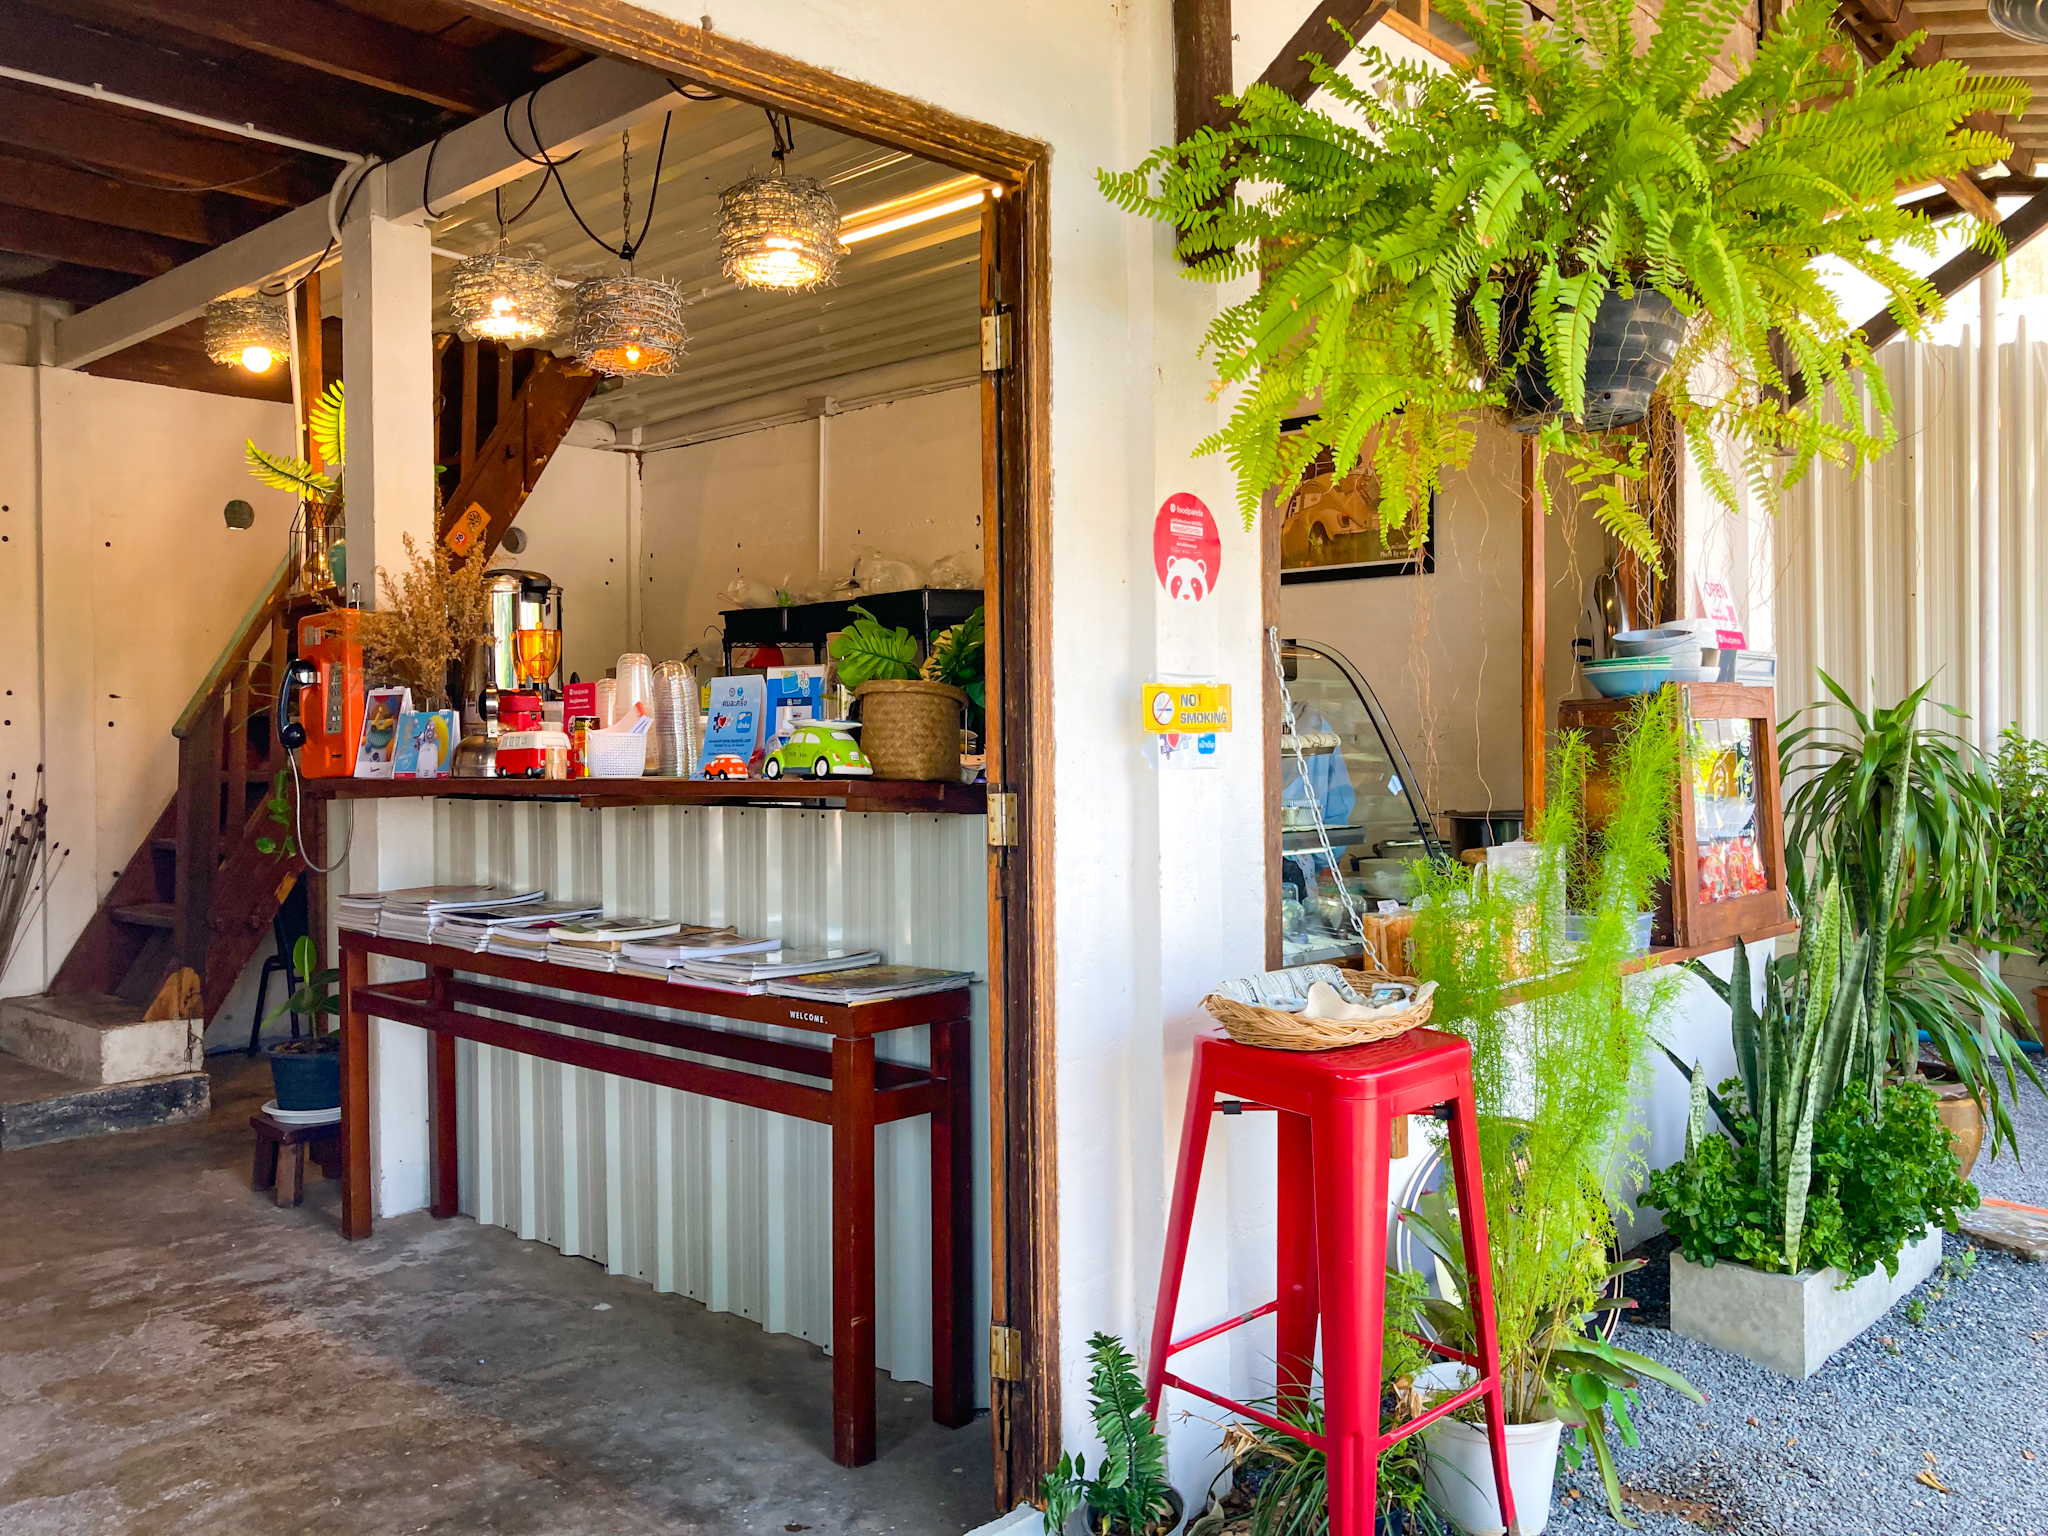 รูปภาพของ แซลองออ Cafe ร้านเล็กๆ แนวๆในเมืองตรัง